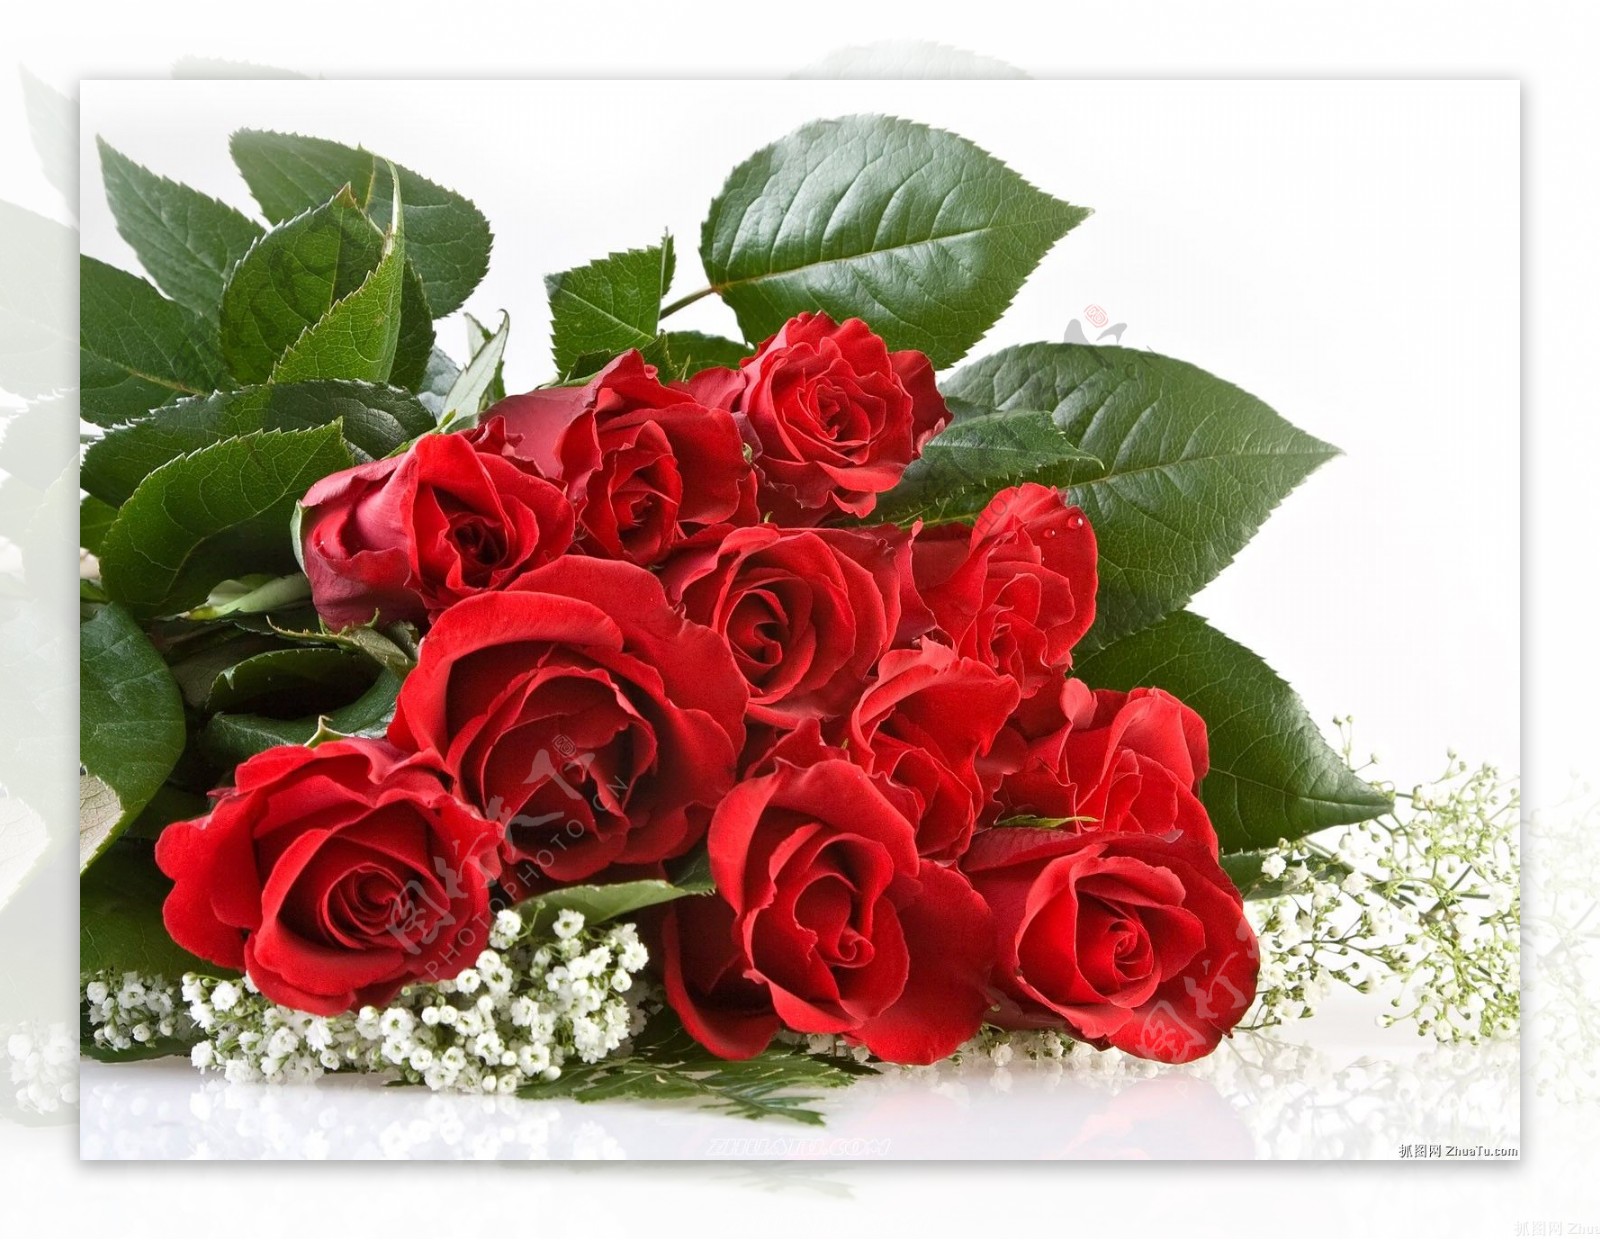 一支红玫瑰花图片 - 【花卉百科网】